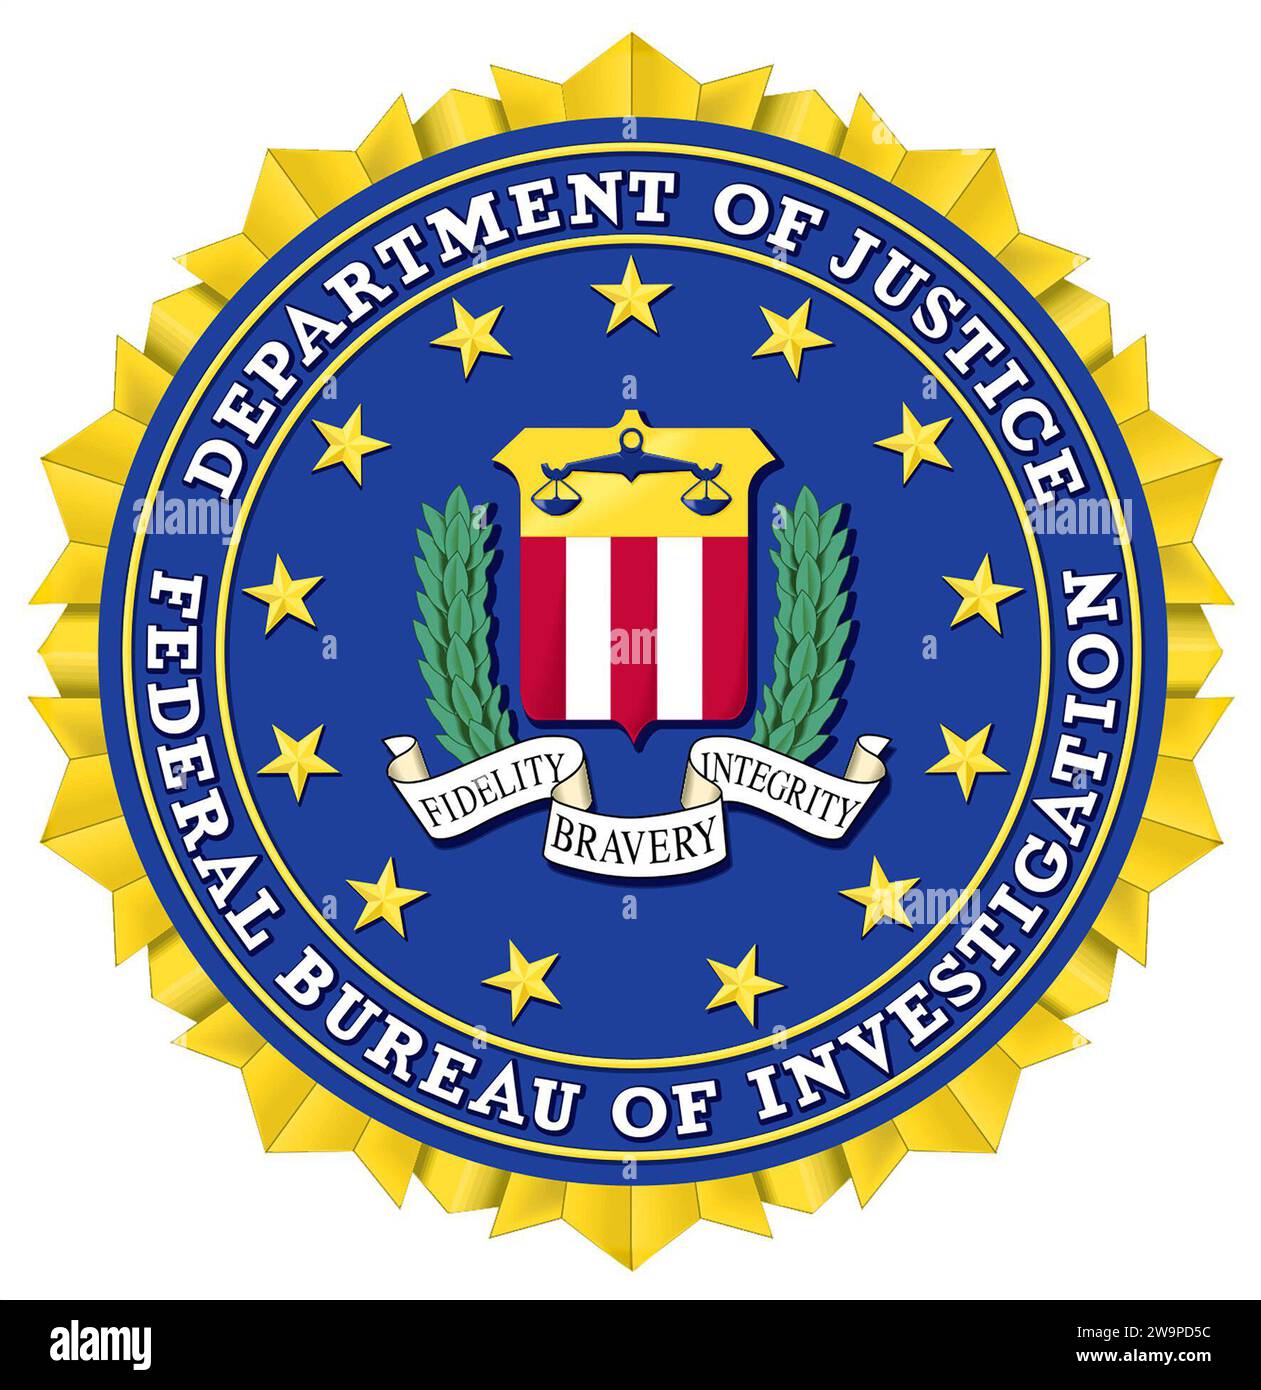 Logo FBI. Logo del Federal Bureau of Investigation. Dominio pubblico dal punto di vista del copyright, ma si applicano altre restrizioni. Negli Stati Uniti, l'uso non autorizzato del sigillo, del nome e delle iniziali dell'FBI è soggetto ad azione penale ai sensi della legge penale federale. Foto Stock